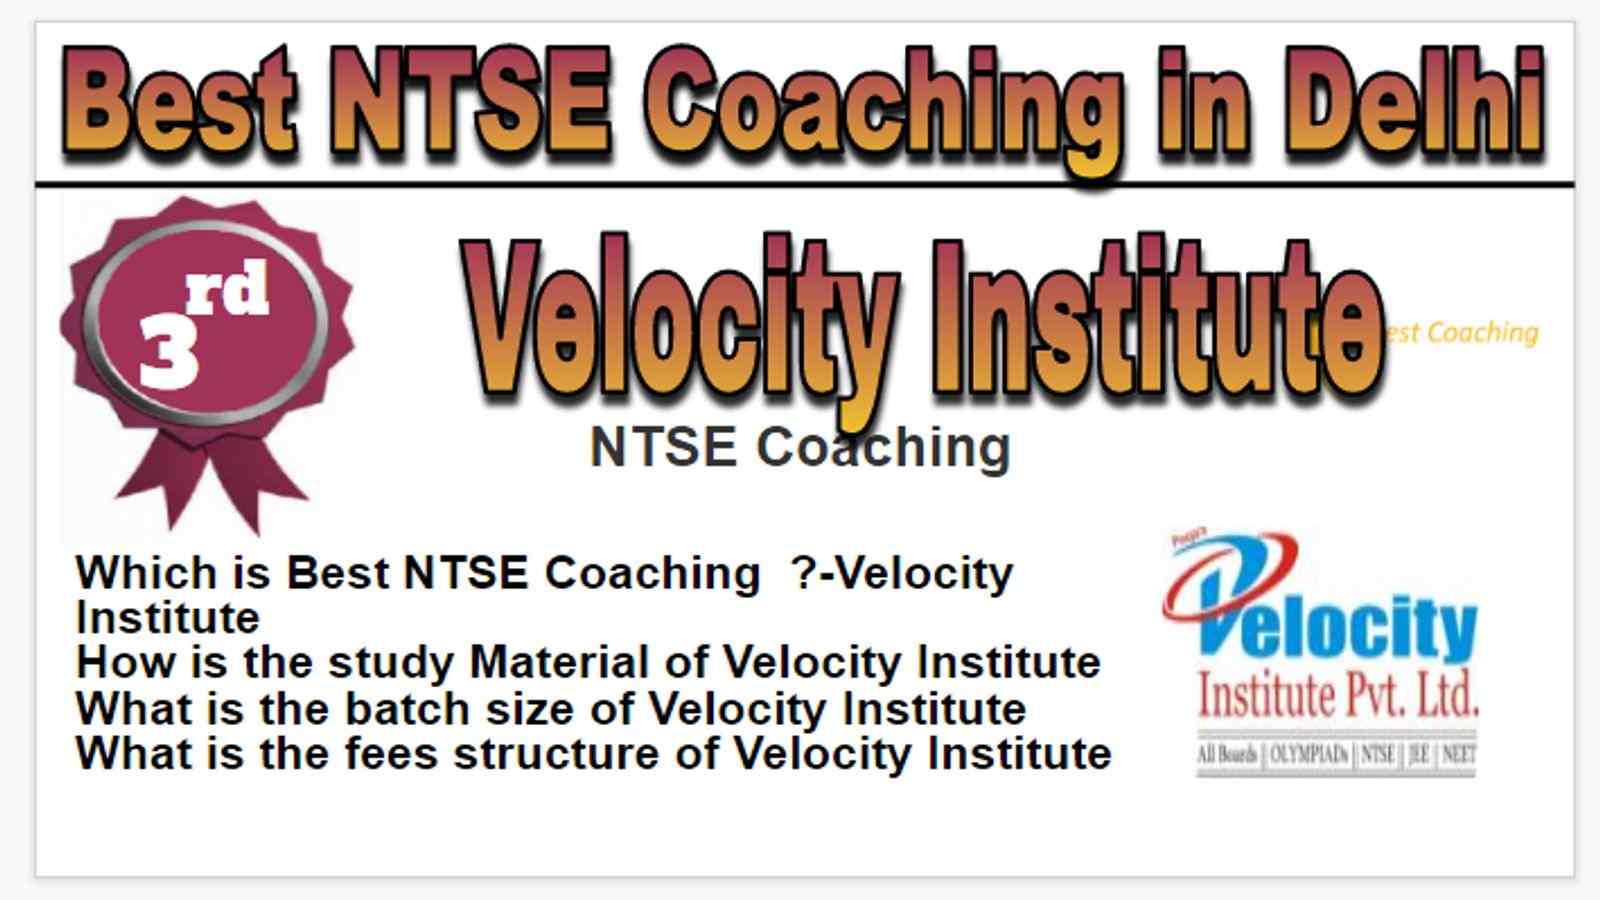 Rank 3 Best NTSE Coaching in Delhi